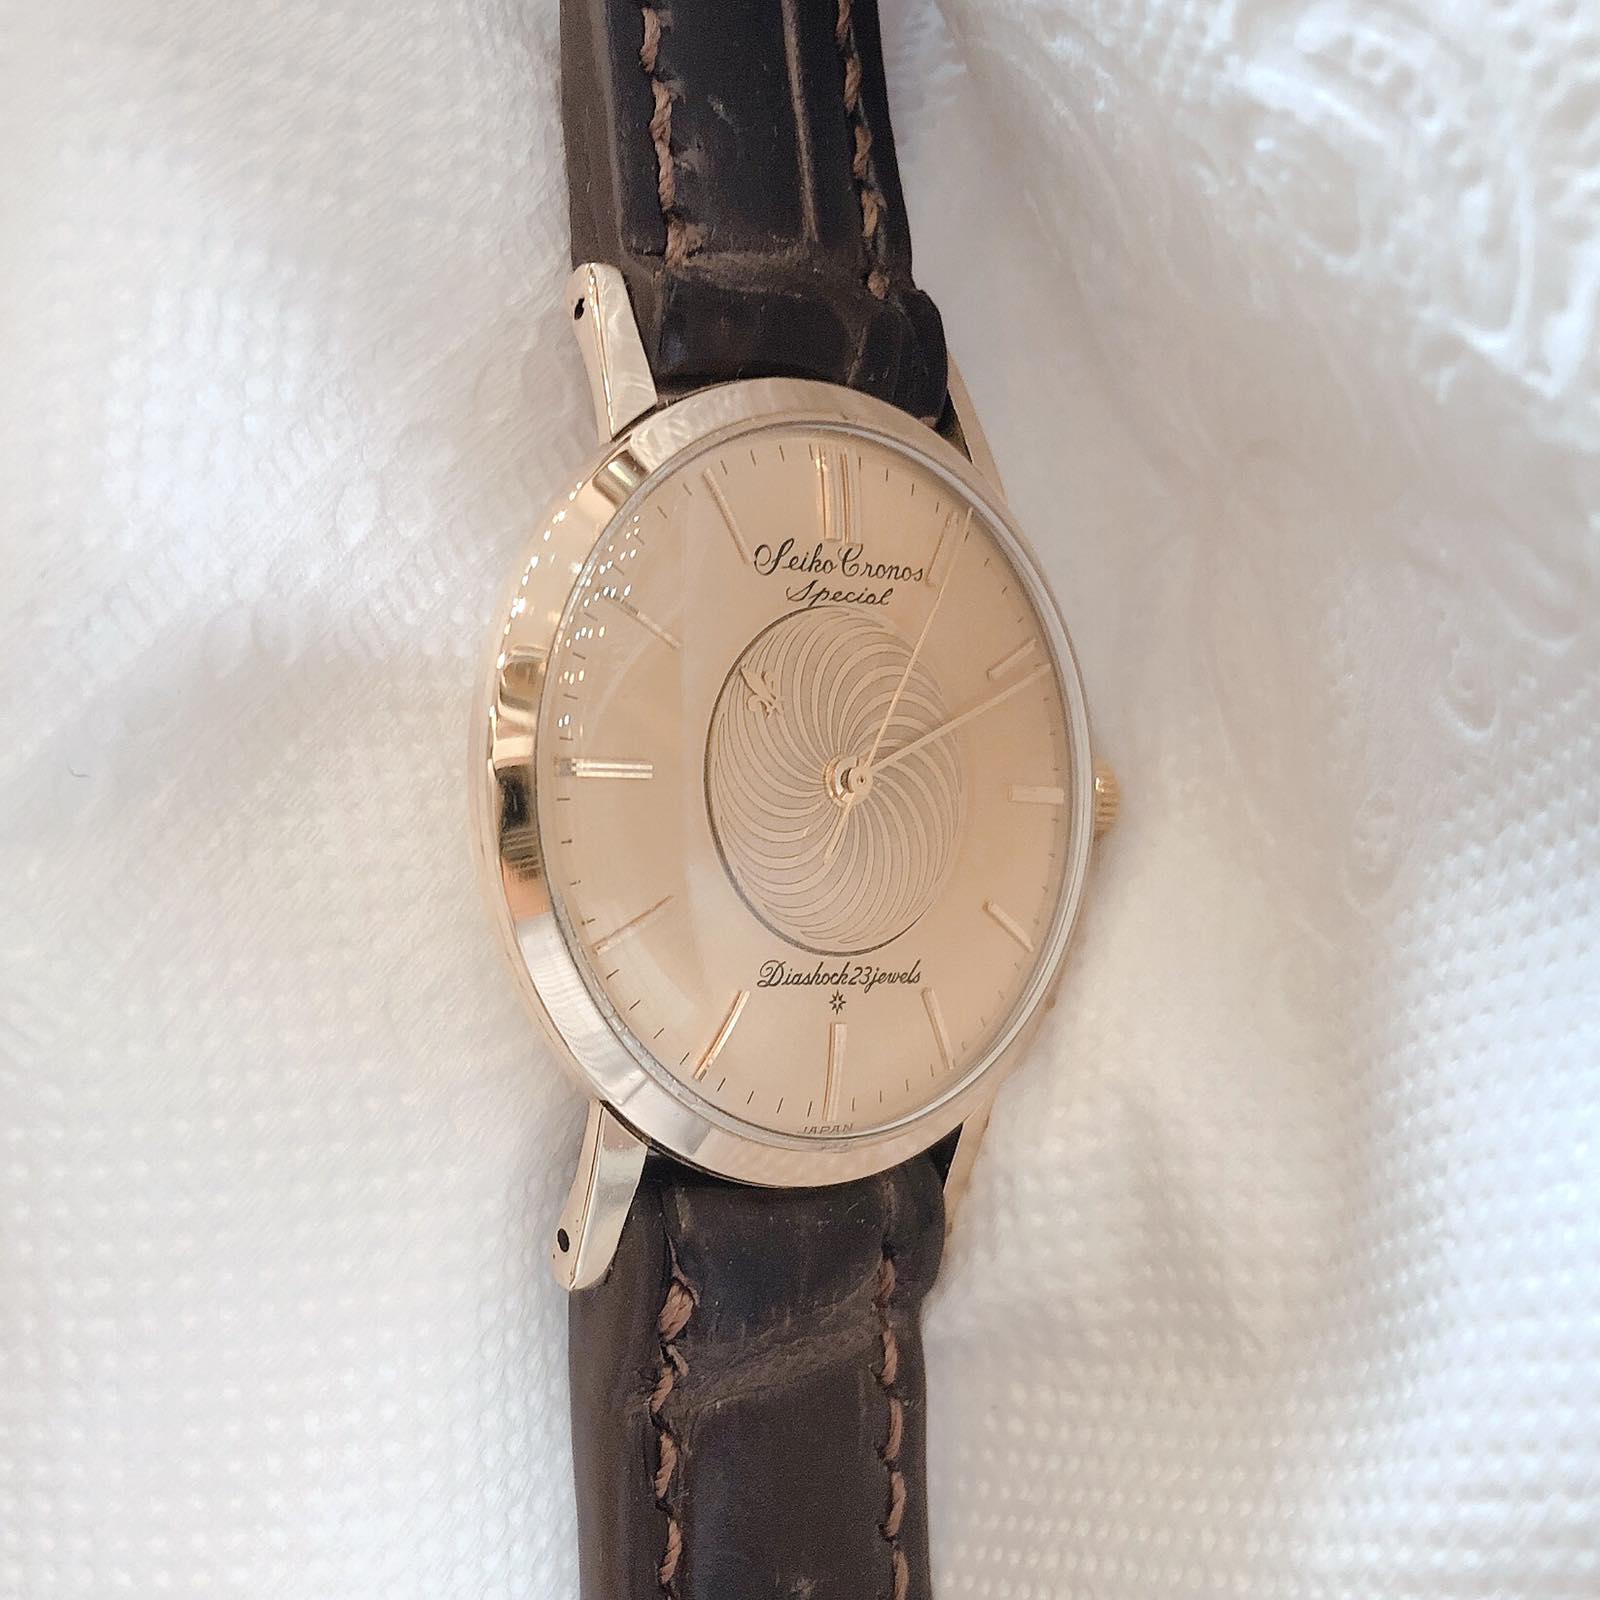 Đồng hồ cổ Seiko Crown kim đĩa lên dây 14k goldfilled chính hãng nhật bản